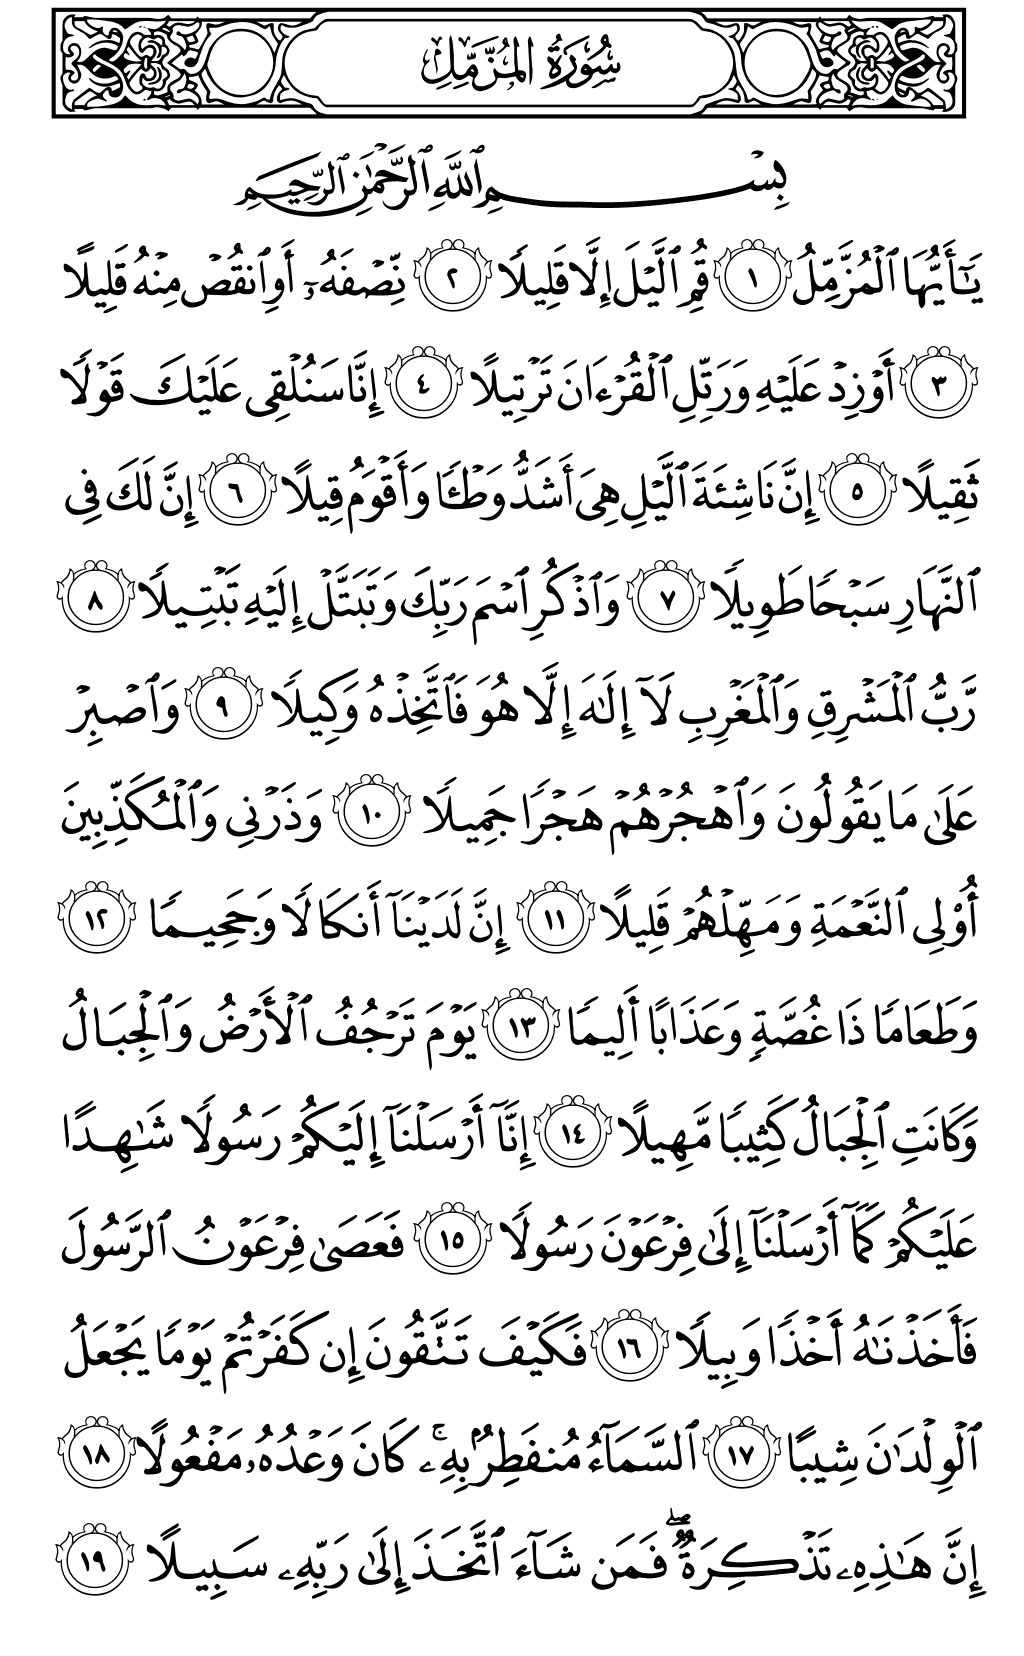 الصفحة رقم 574 من القرآن الكريم